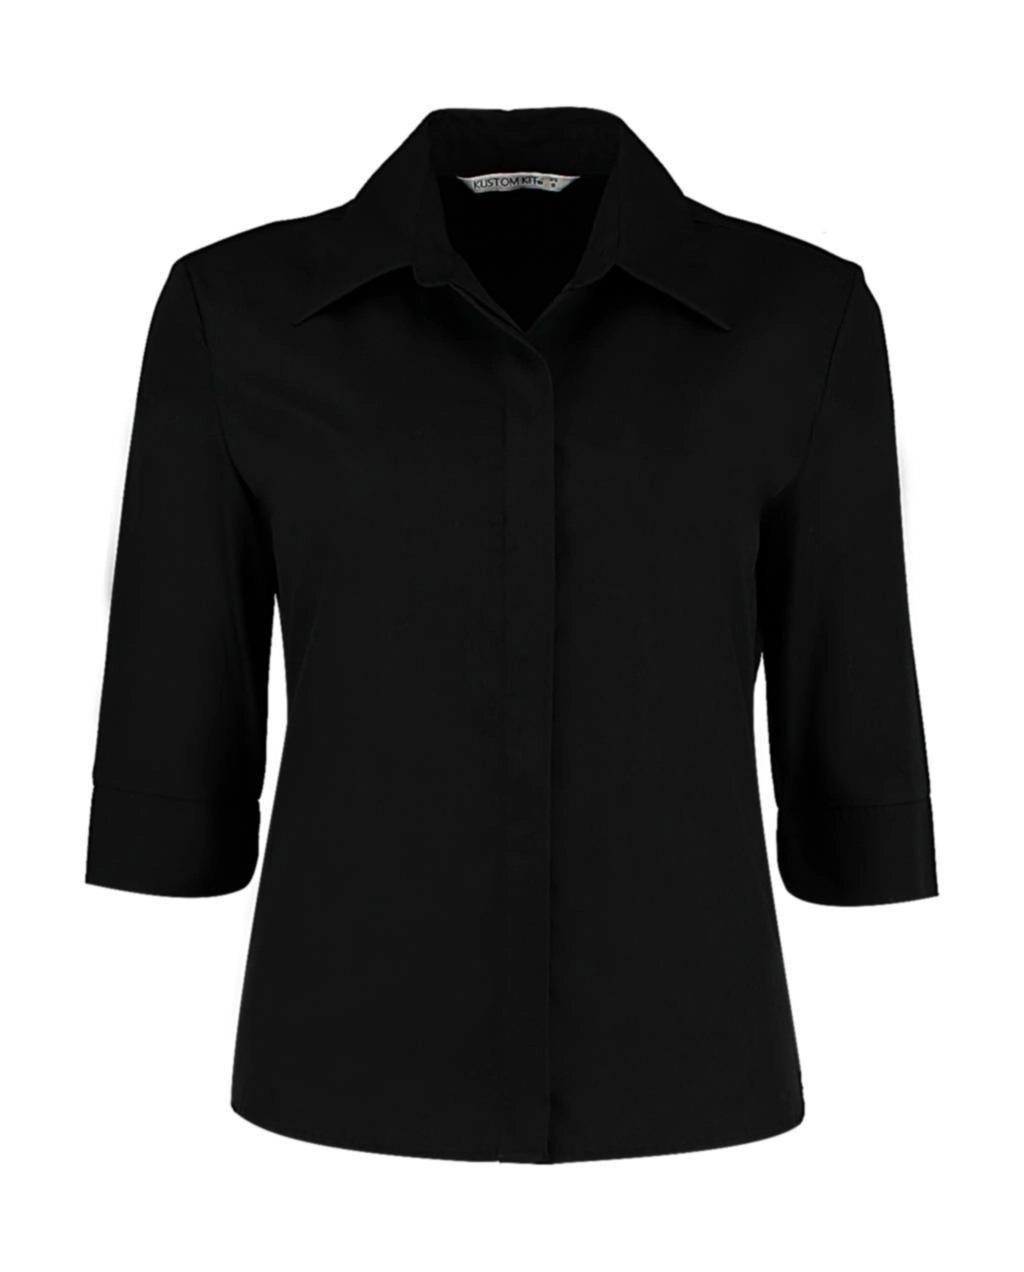 Women`s Tailored Fit Continental Blouse 3/4 Sleeve zum Besticken und Bedrucken in der Farbe Black mit Ihren Logo, Schriftzug oder Motiv.